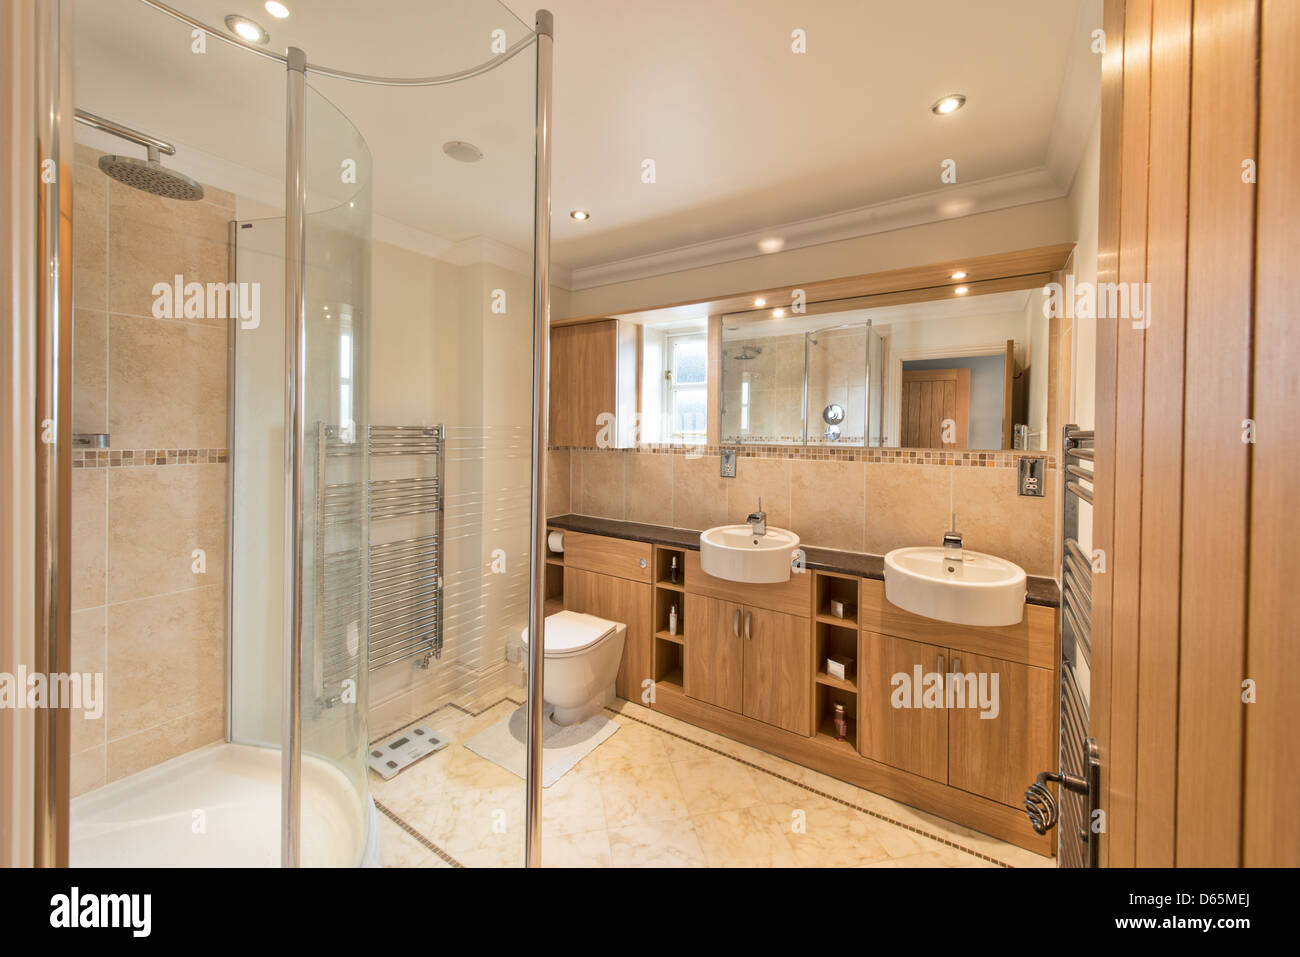 Une élégante salle de douche moderne / contemporain dans une maison ou hôtel suite Banque D'Images